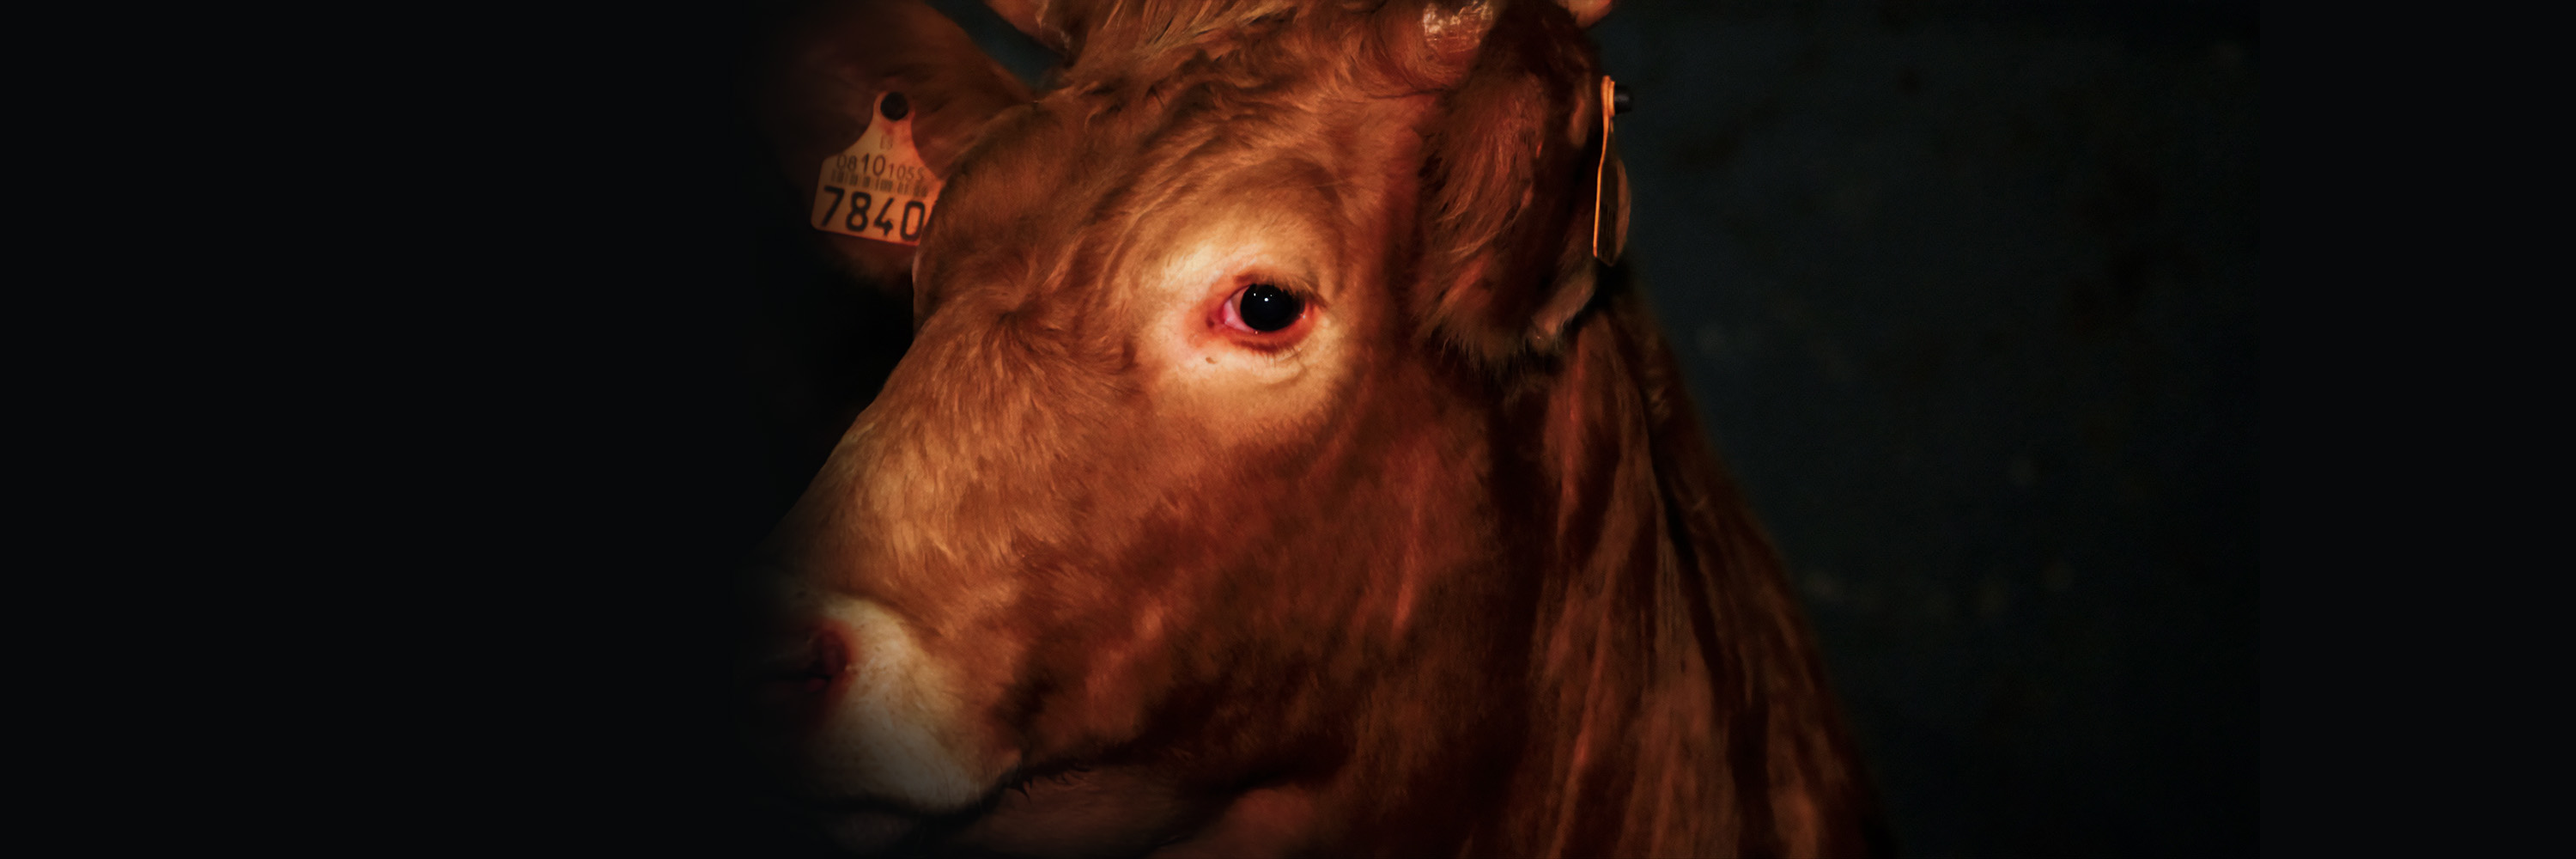 Vaca 7840, que fue exportada viva de España y degollada en un matadero halal en Líbano.